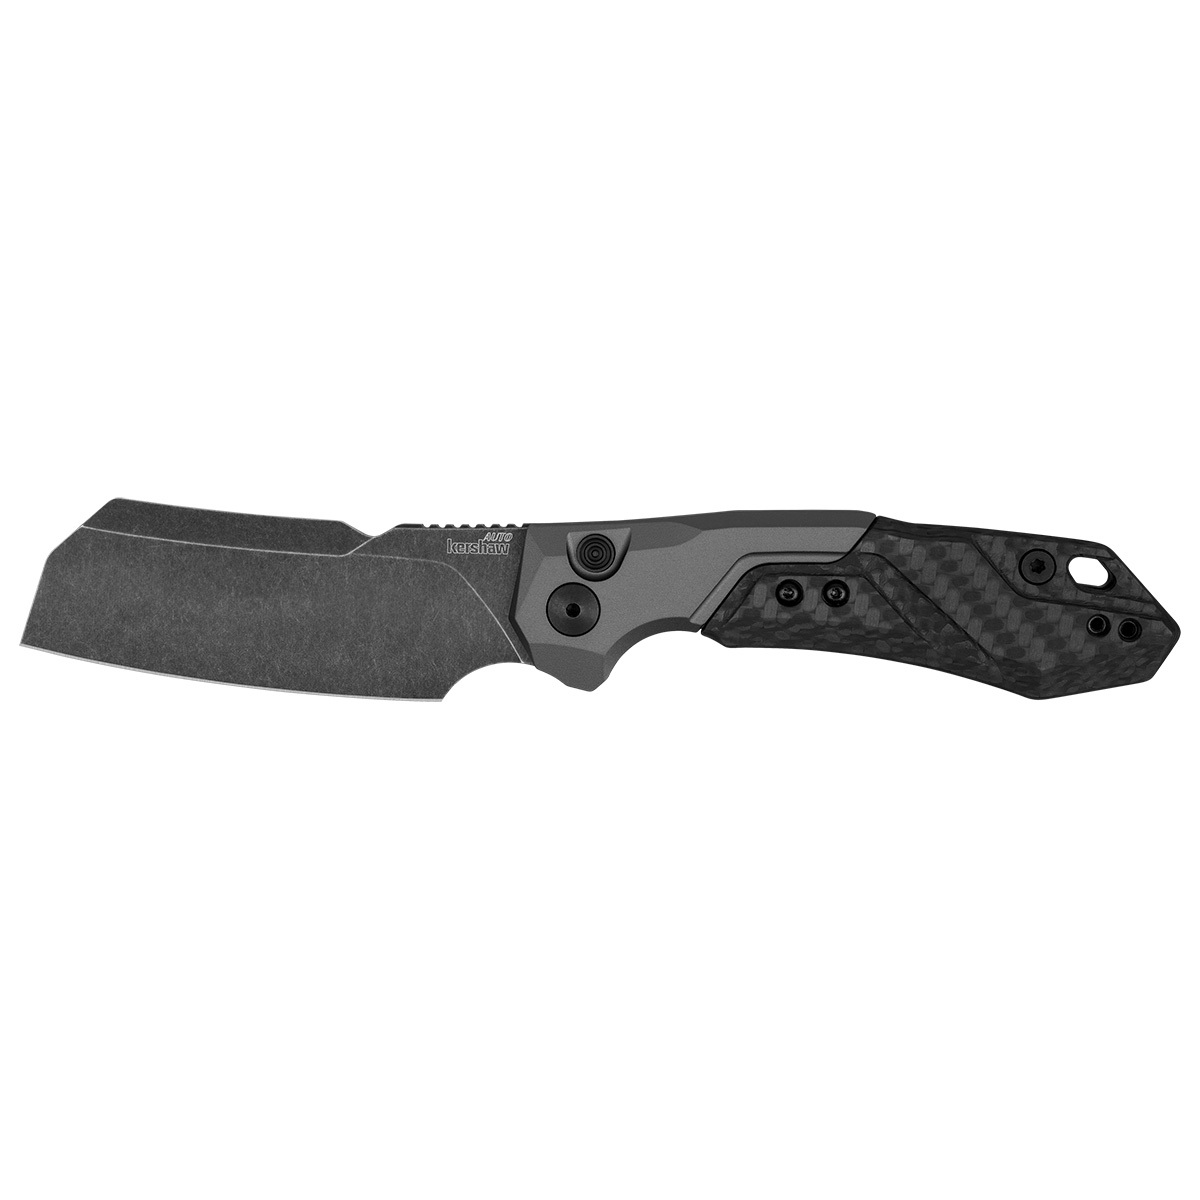 Складной нож Kershaw Launch 14, сталь CPM154, рукоять алюминий/Carbon fiber многофункциональный маленький складной нож huohou